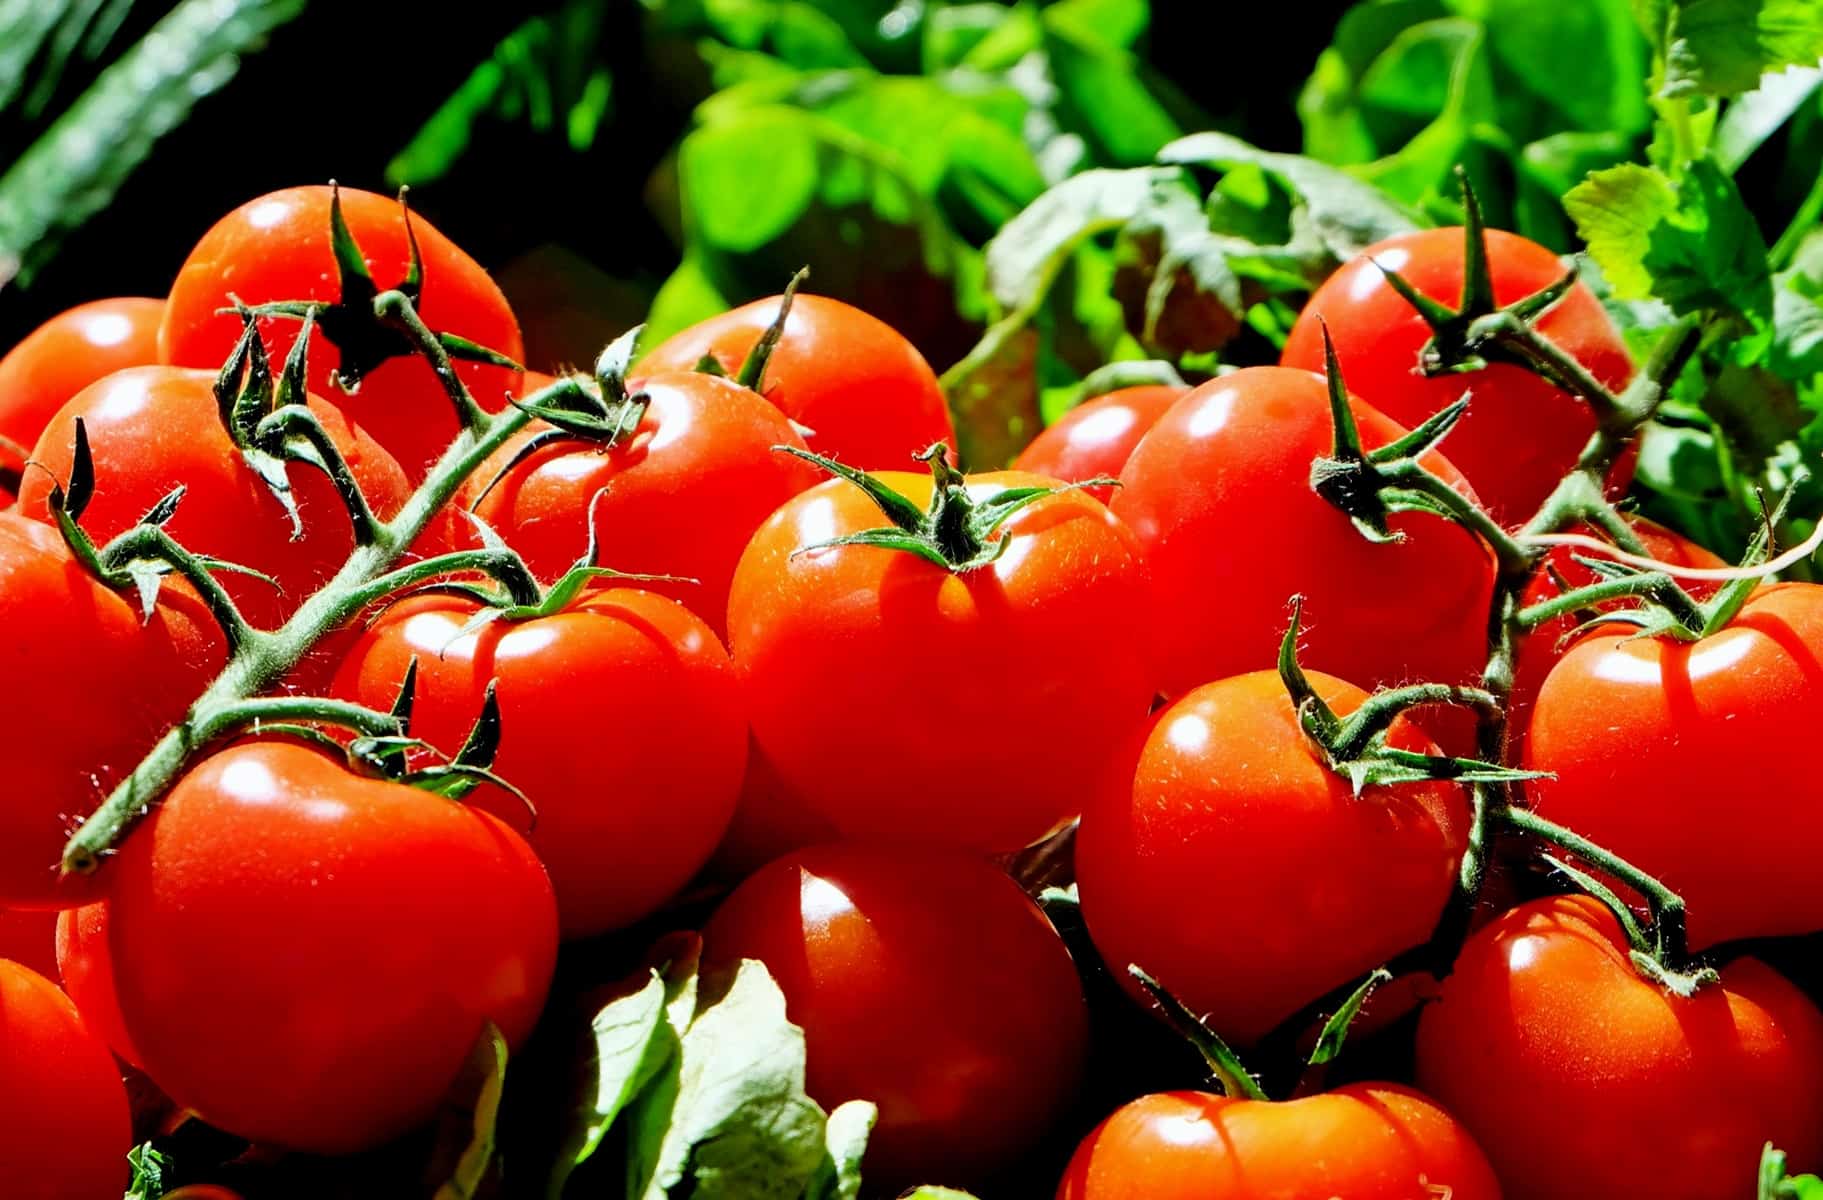 Kostenlose Bild: Essen, Tomate, Gemüse, Ernährung, lecker, Bio